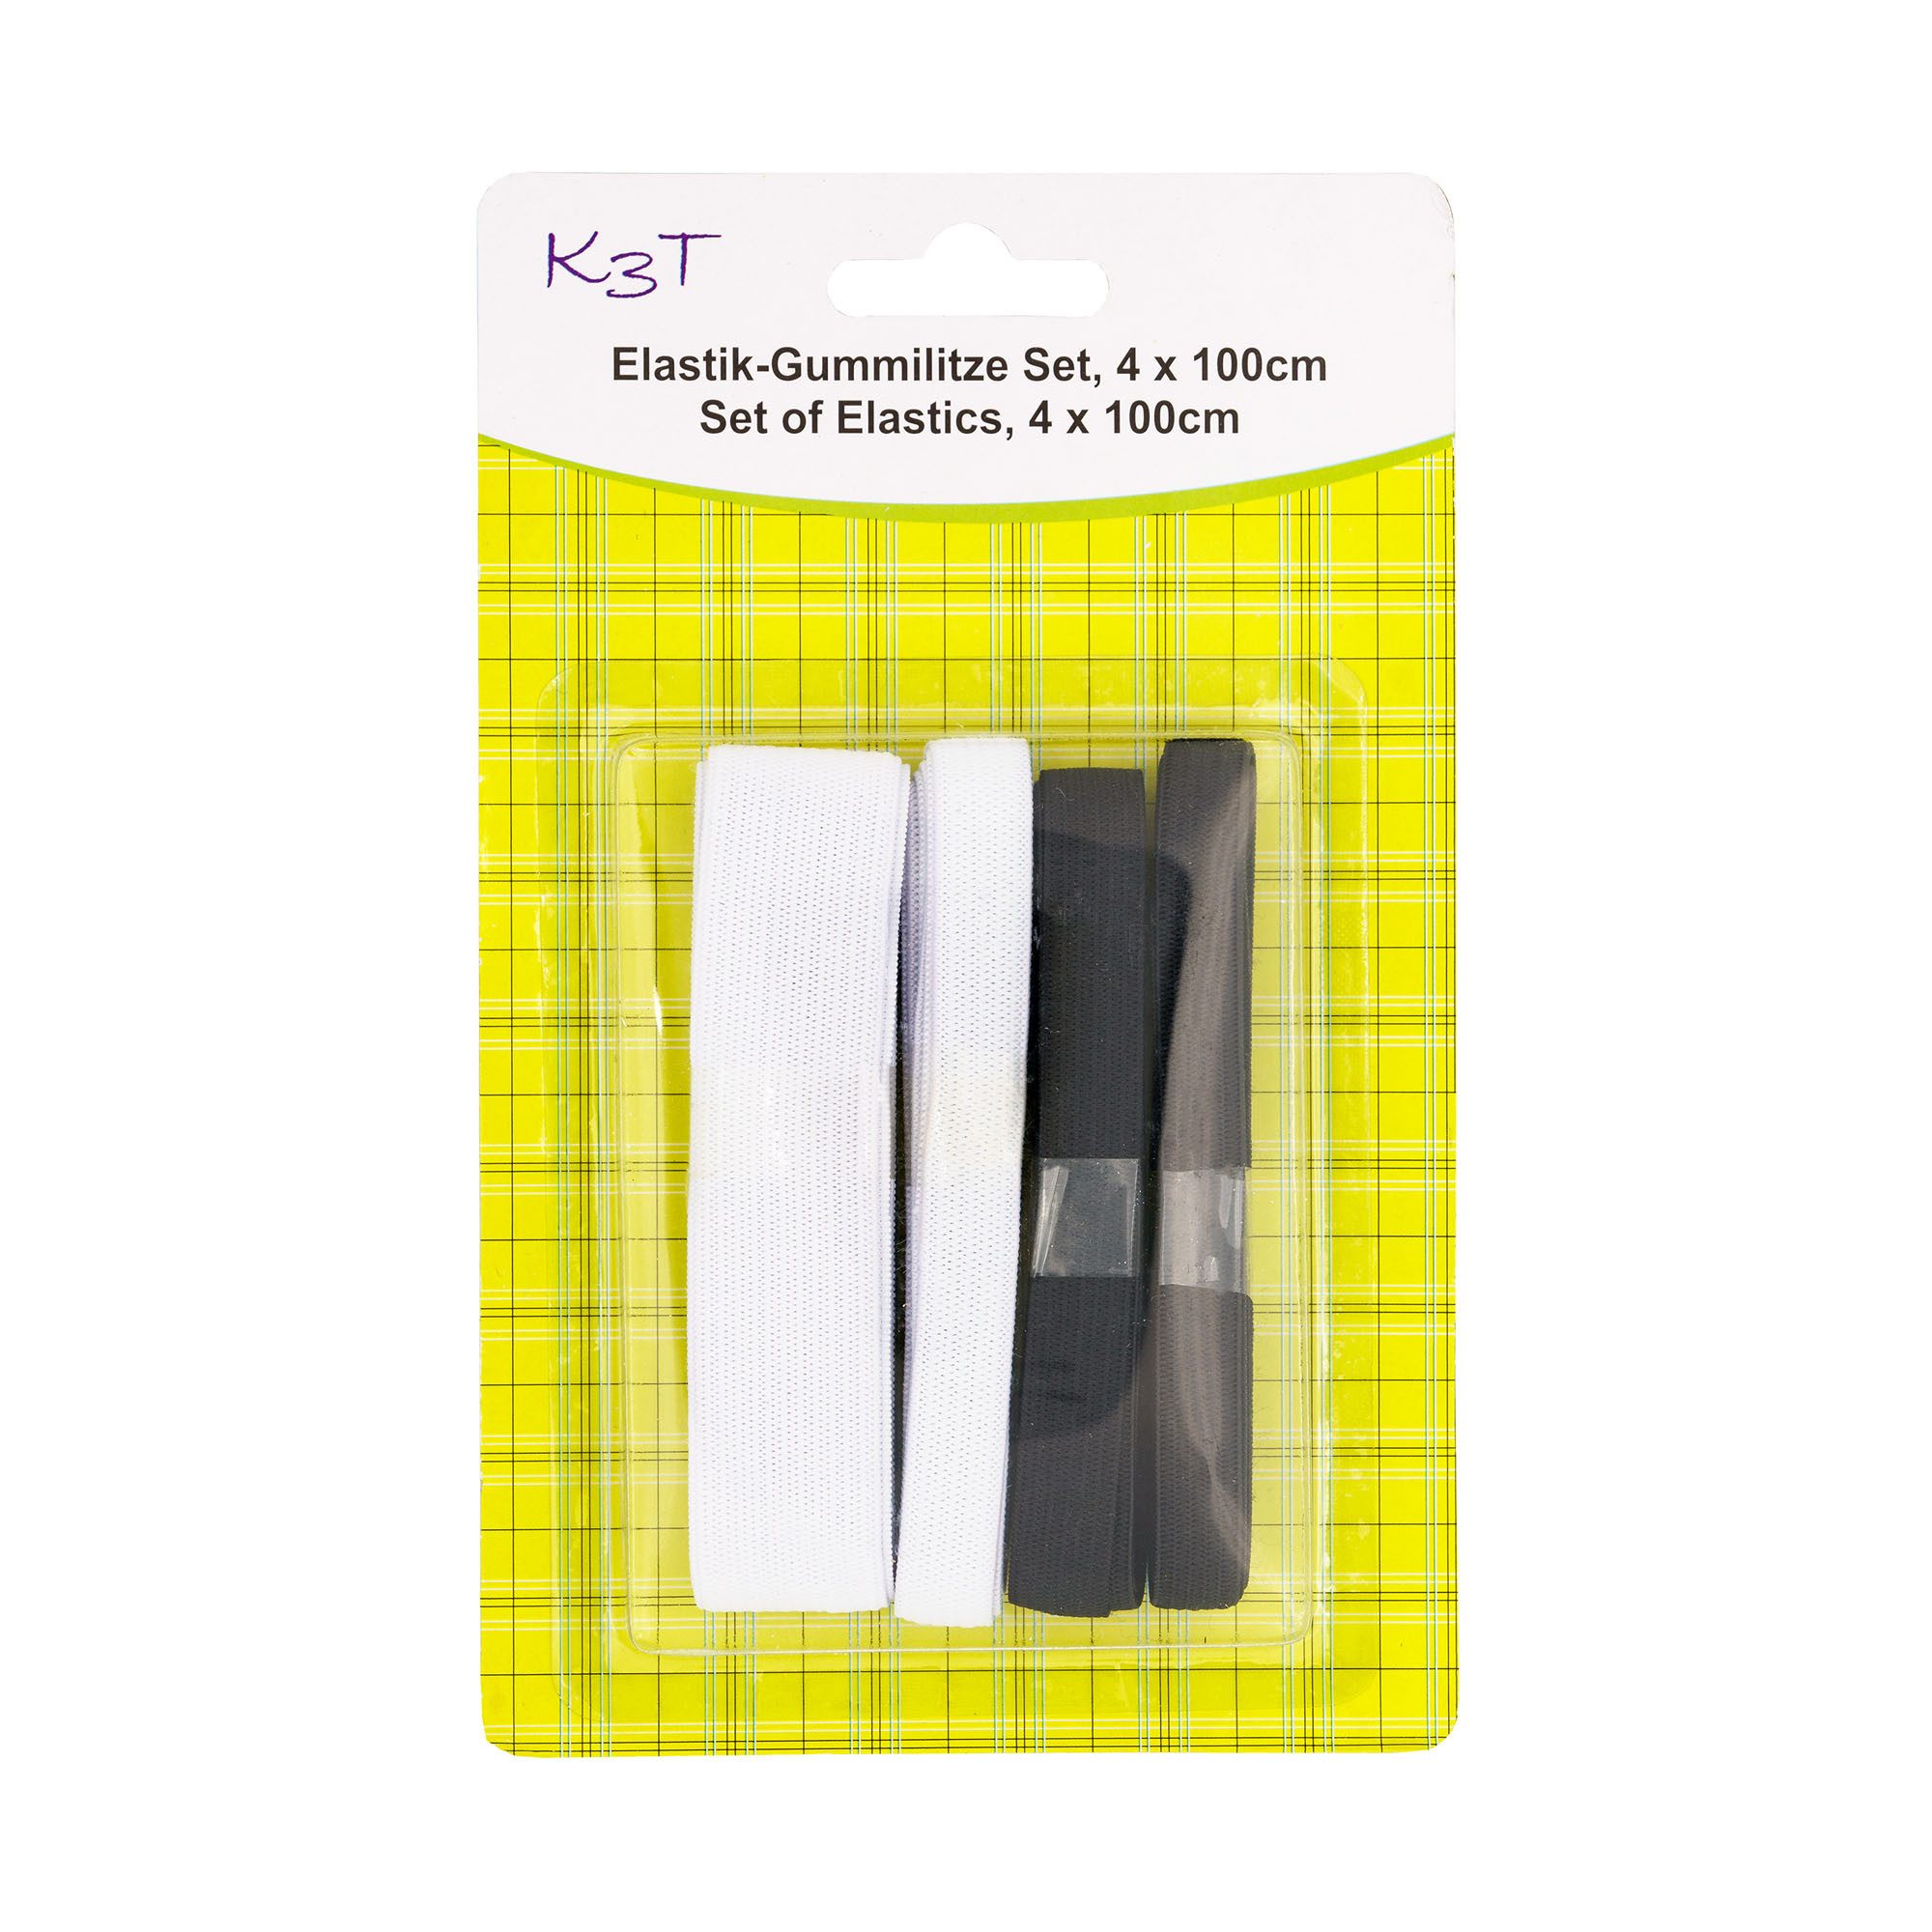 TSI Schreibwaren Gummiband Elastik-Gummilitze-Set, 4-teilig, je 100cm, schwarz und weiß